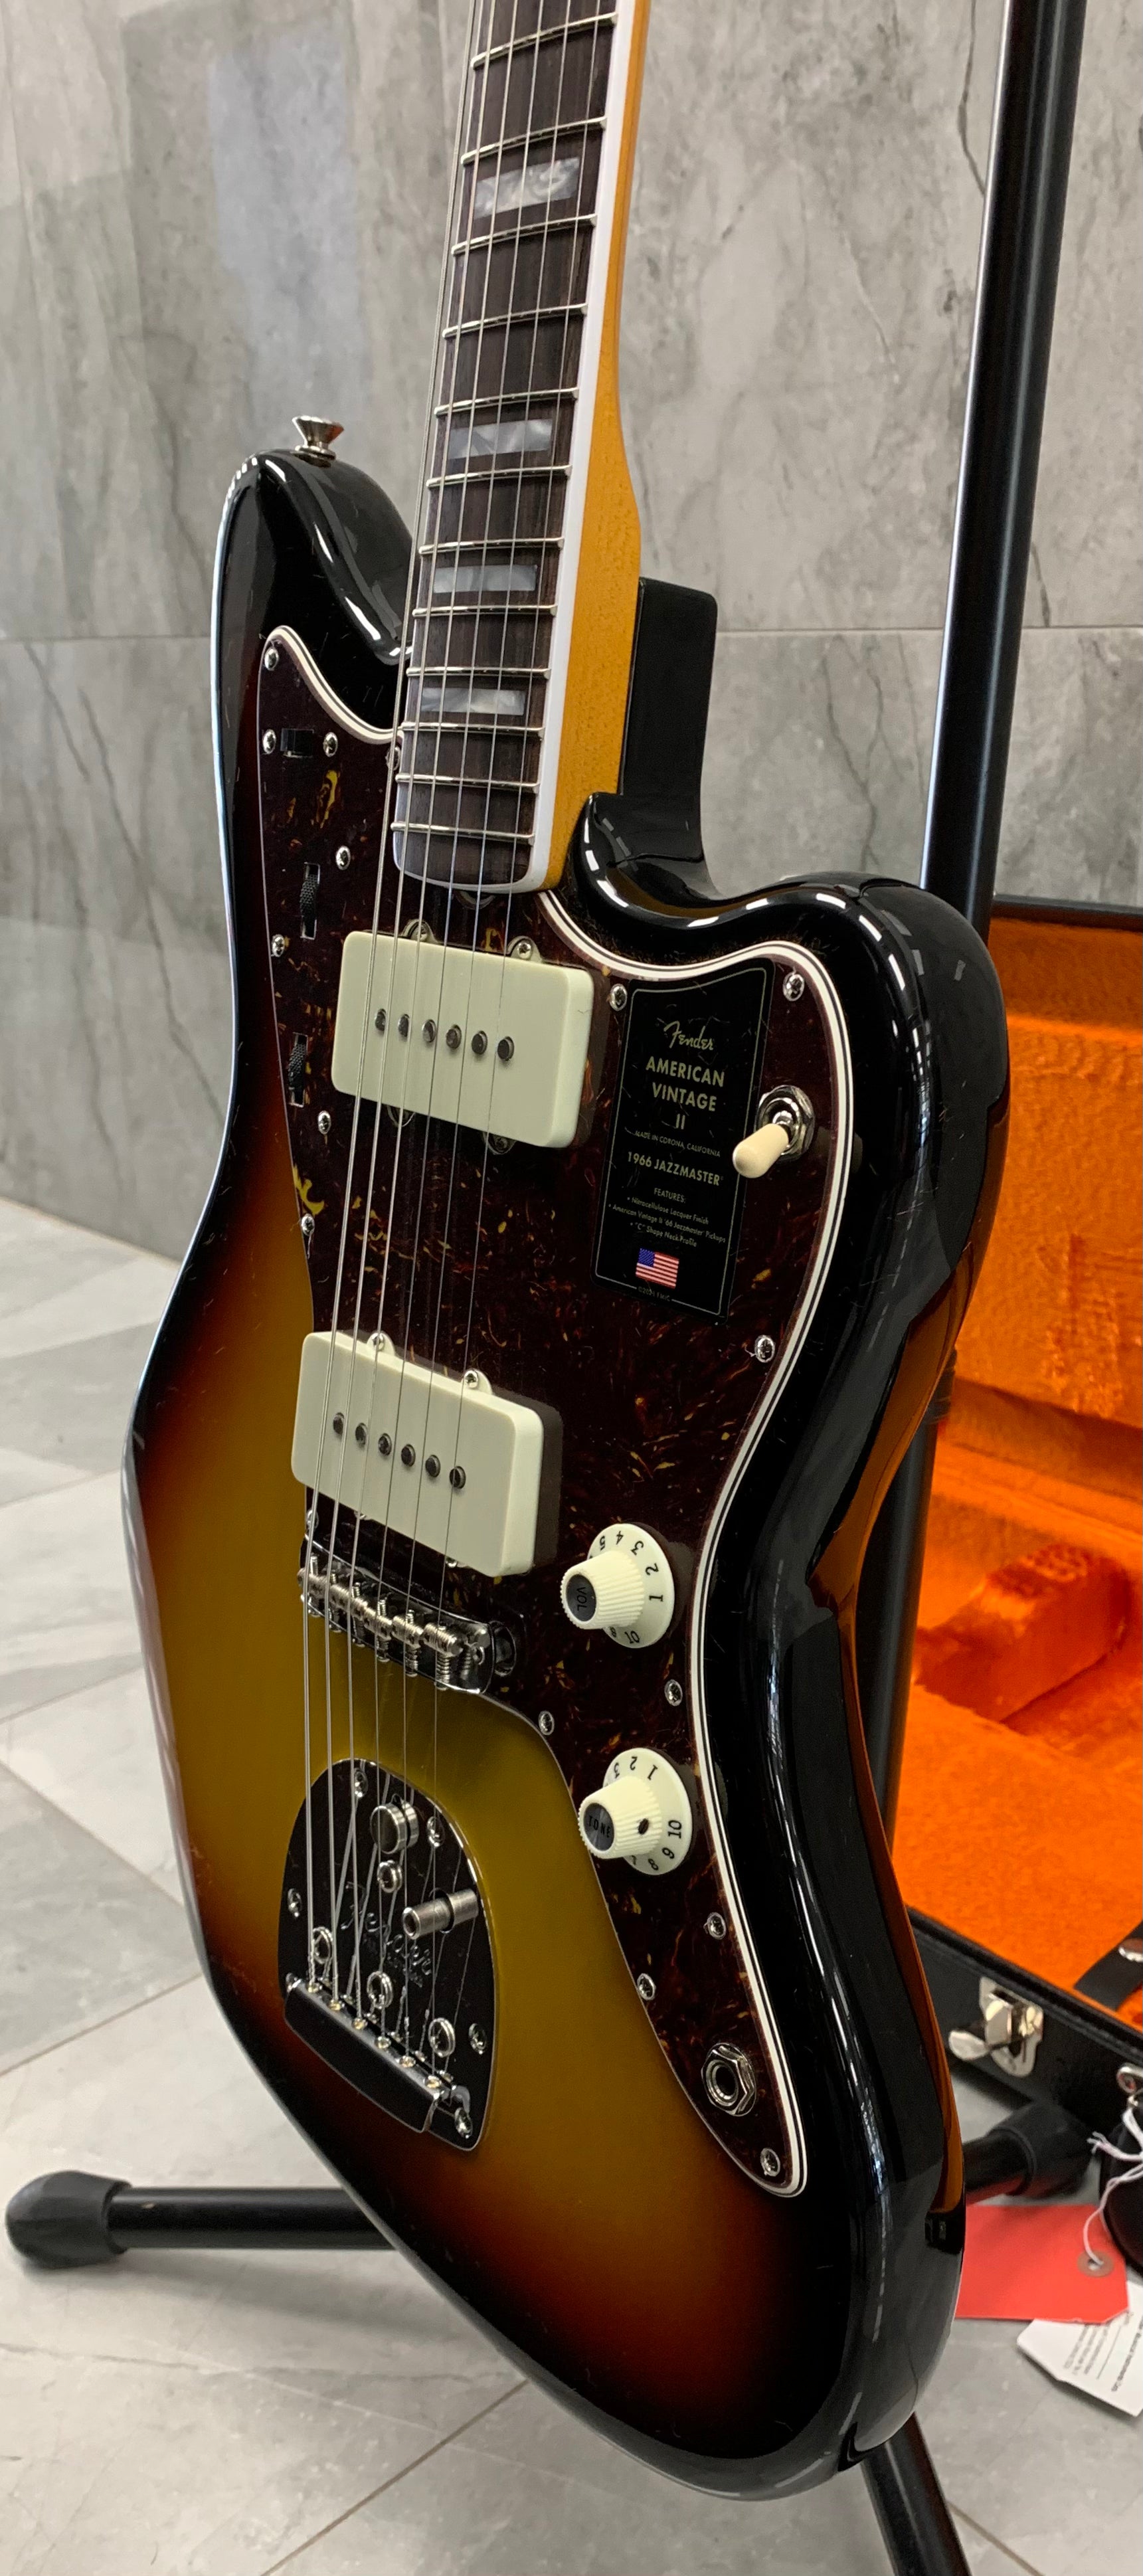 Fender American Vintage II 1966 Jazzmaster Rosewood Fingerboard, 3-Color Sunburst 0110340800